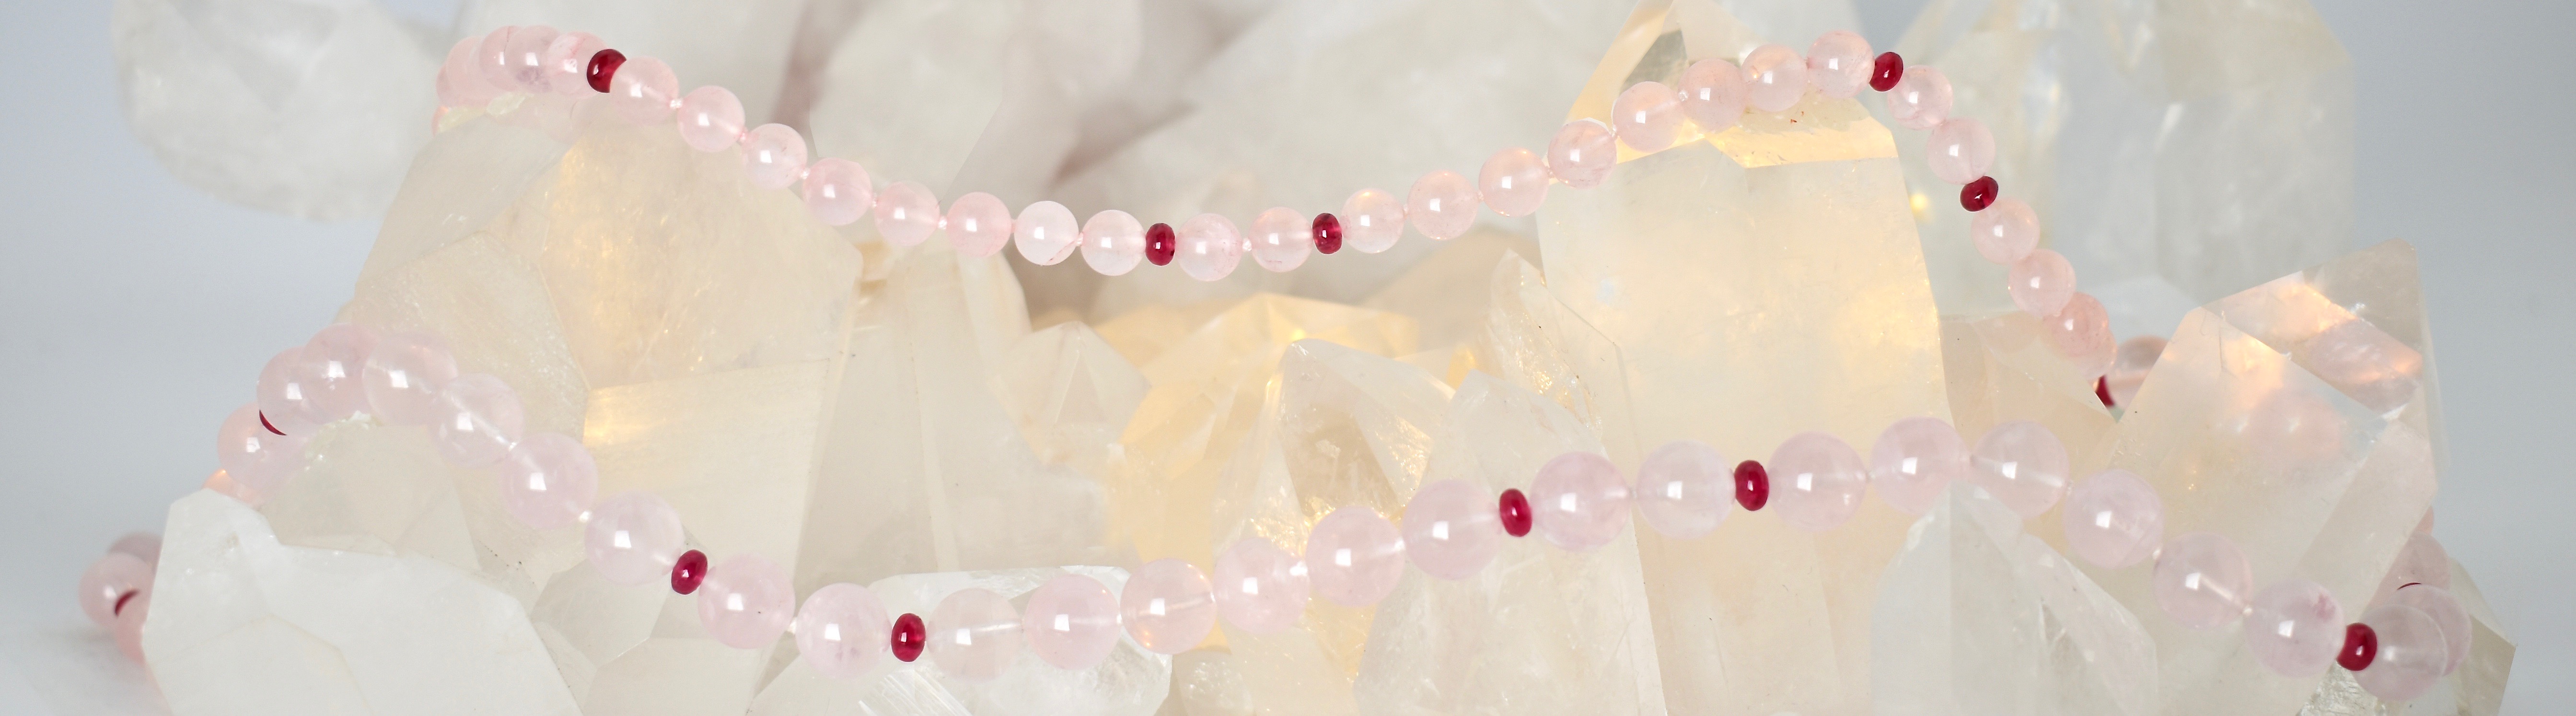 Rose Quartz & Red Spinel gemstone necklace on a Quartz crystal cluster